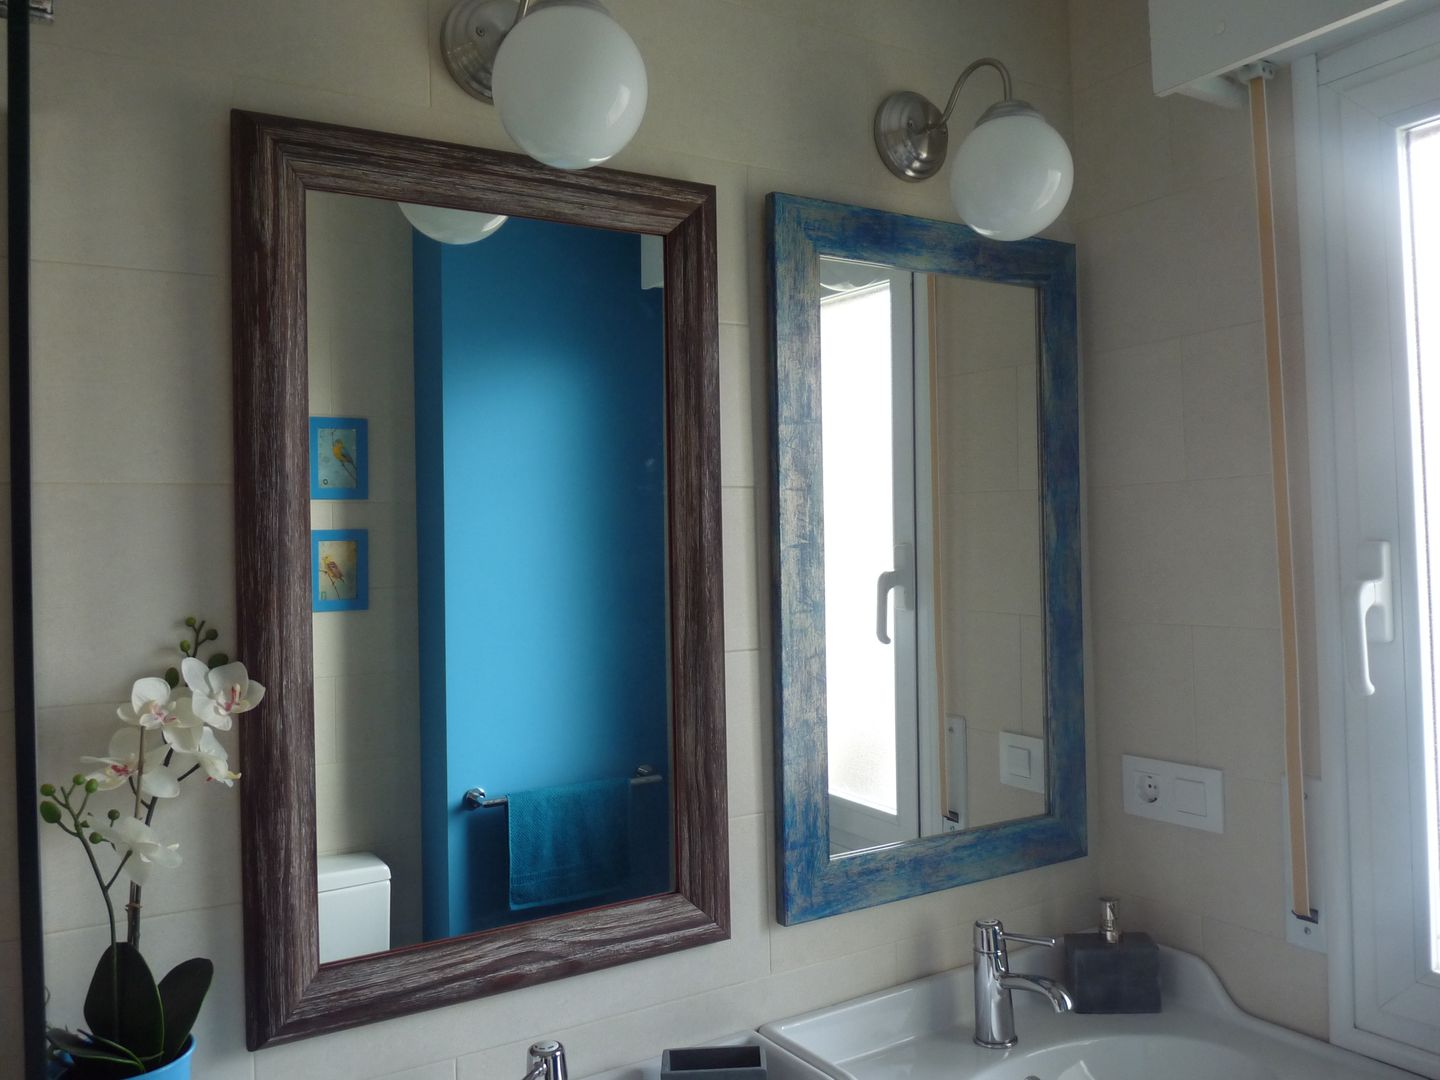 Reforma de baño: azul turquesa y baldosas impresas de mosaico hidráulico, Dec&You Dec&You Baños eclécticos